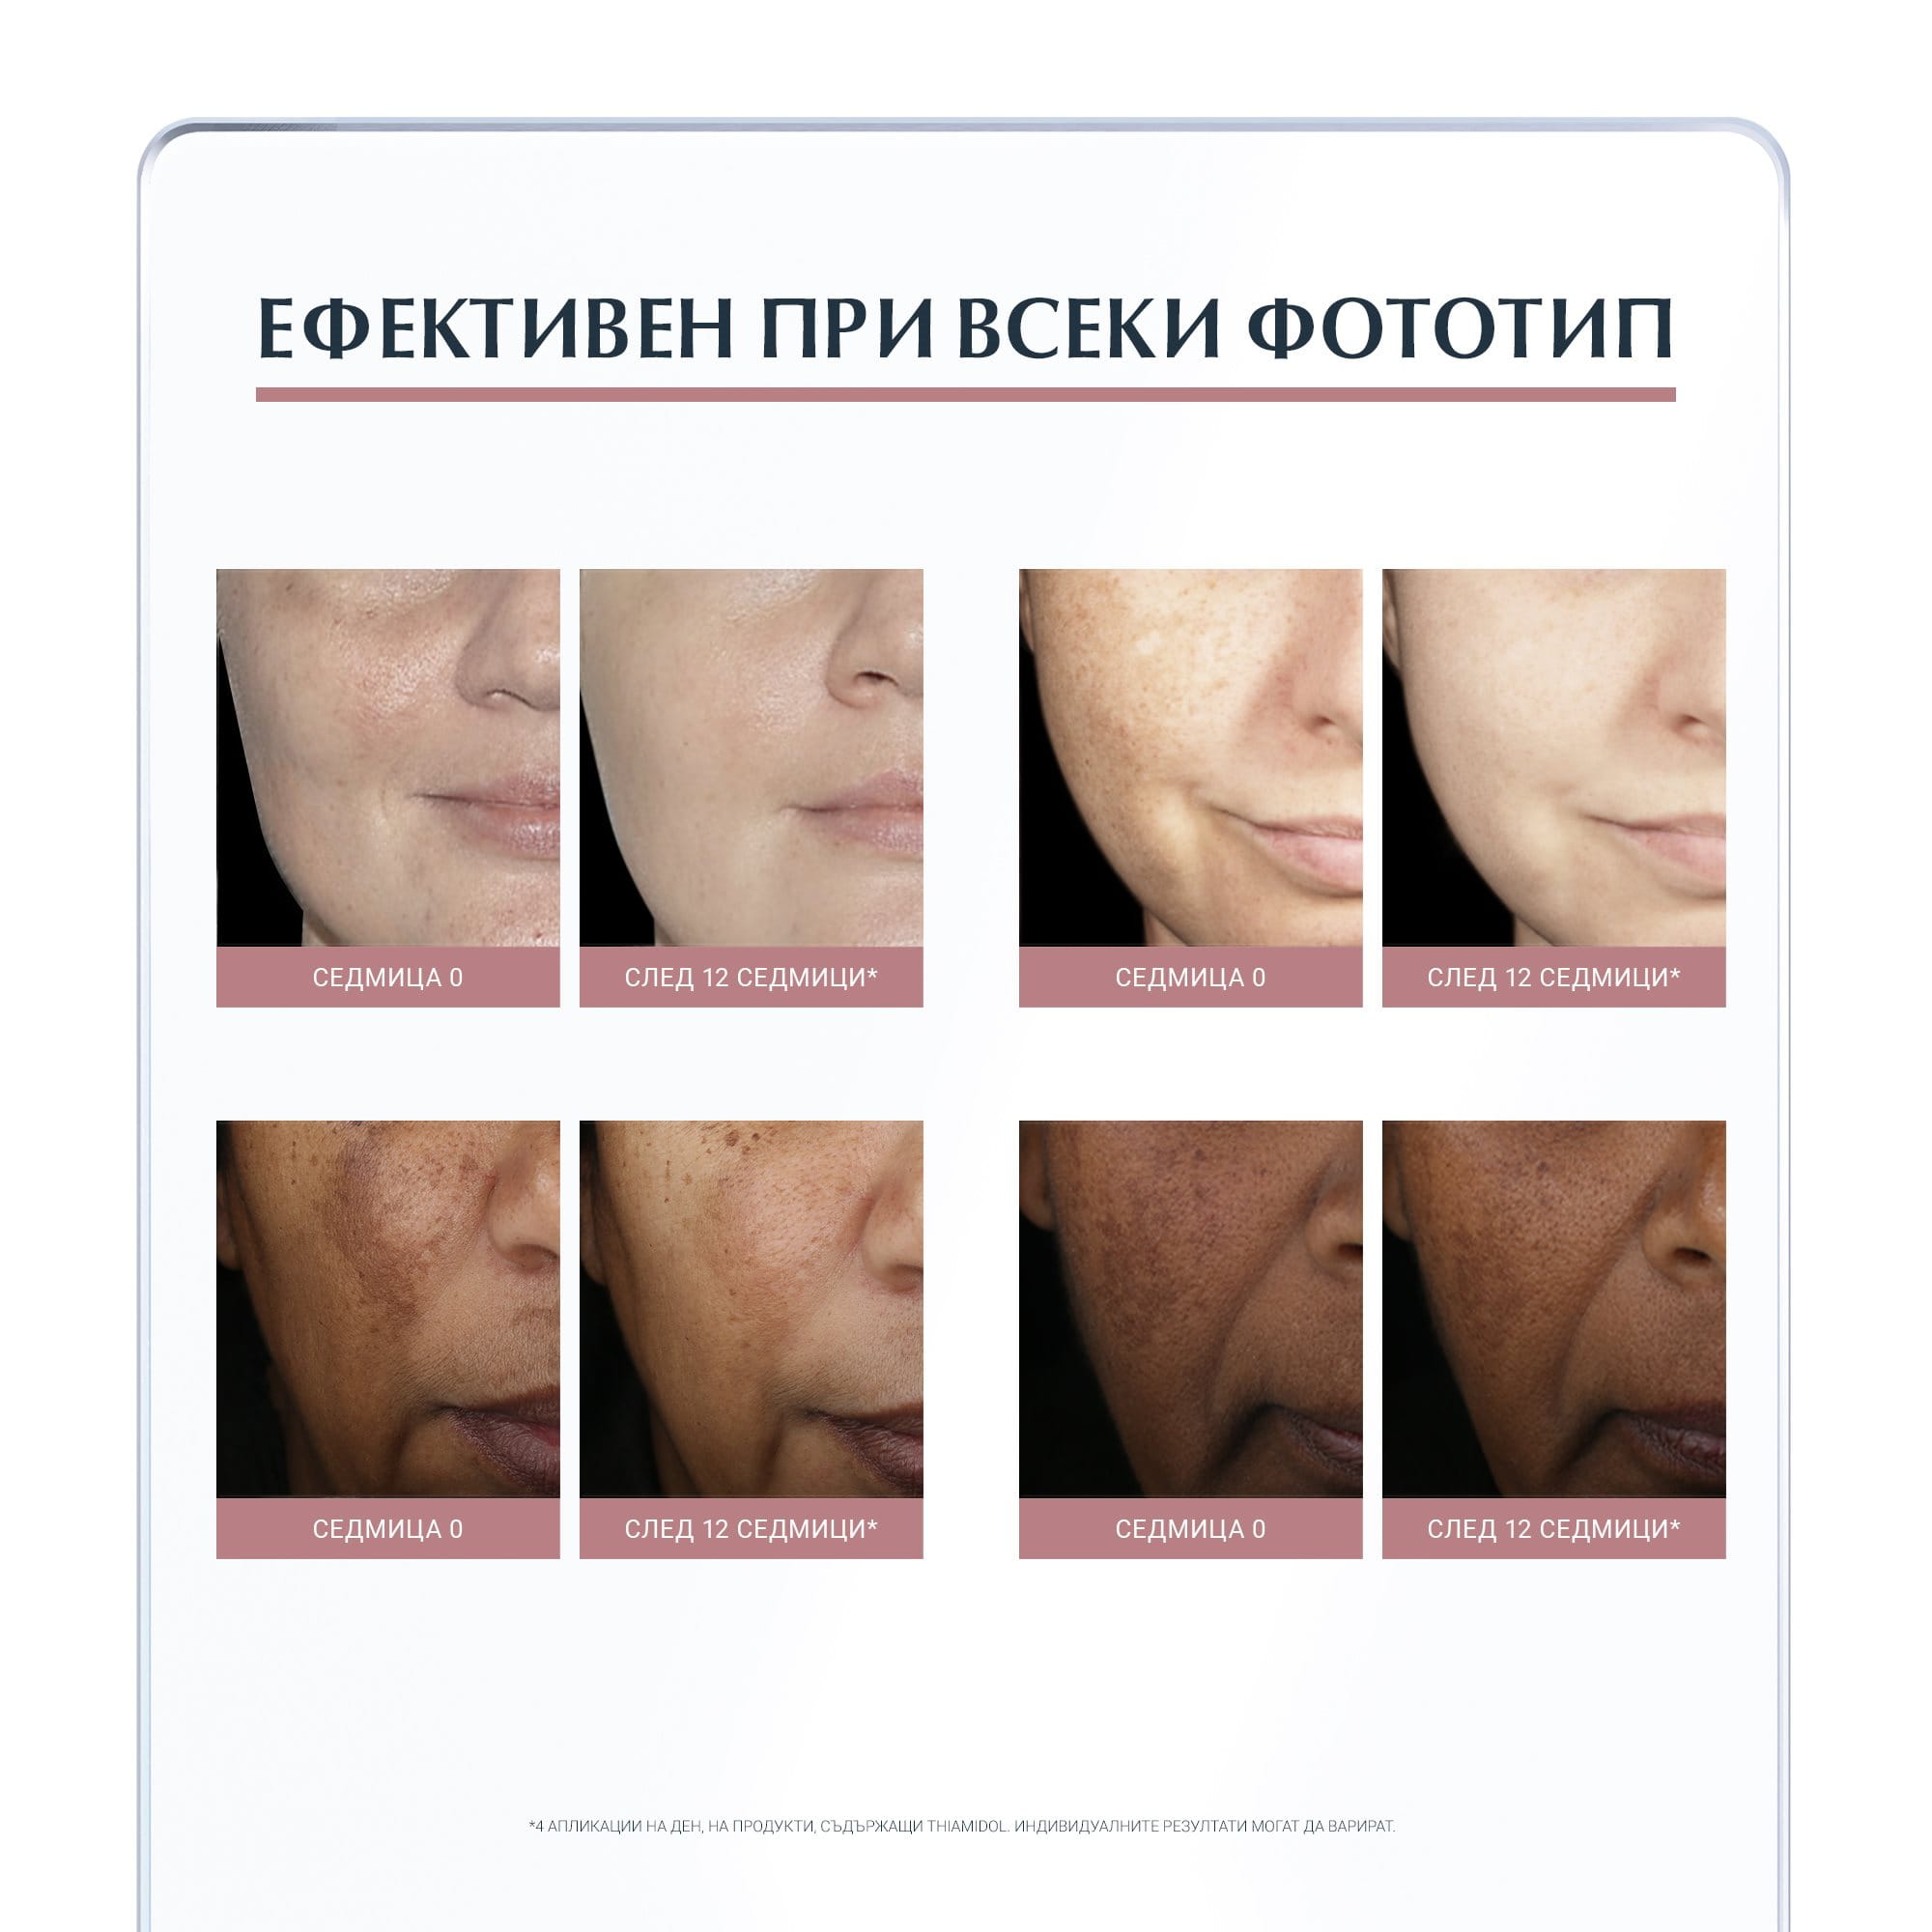 Клиничните и дерматологични проучвания доказват много висока ефективност и отлична поносимост от всеки фототип кожа